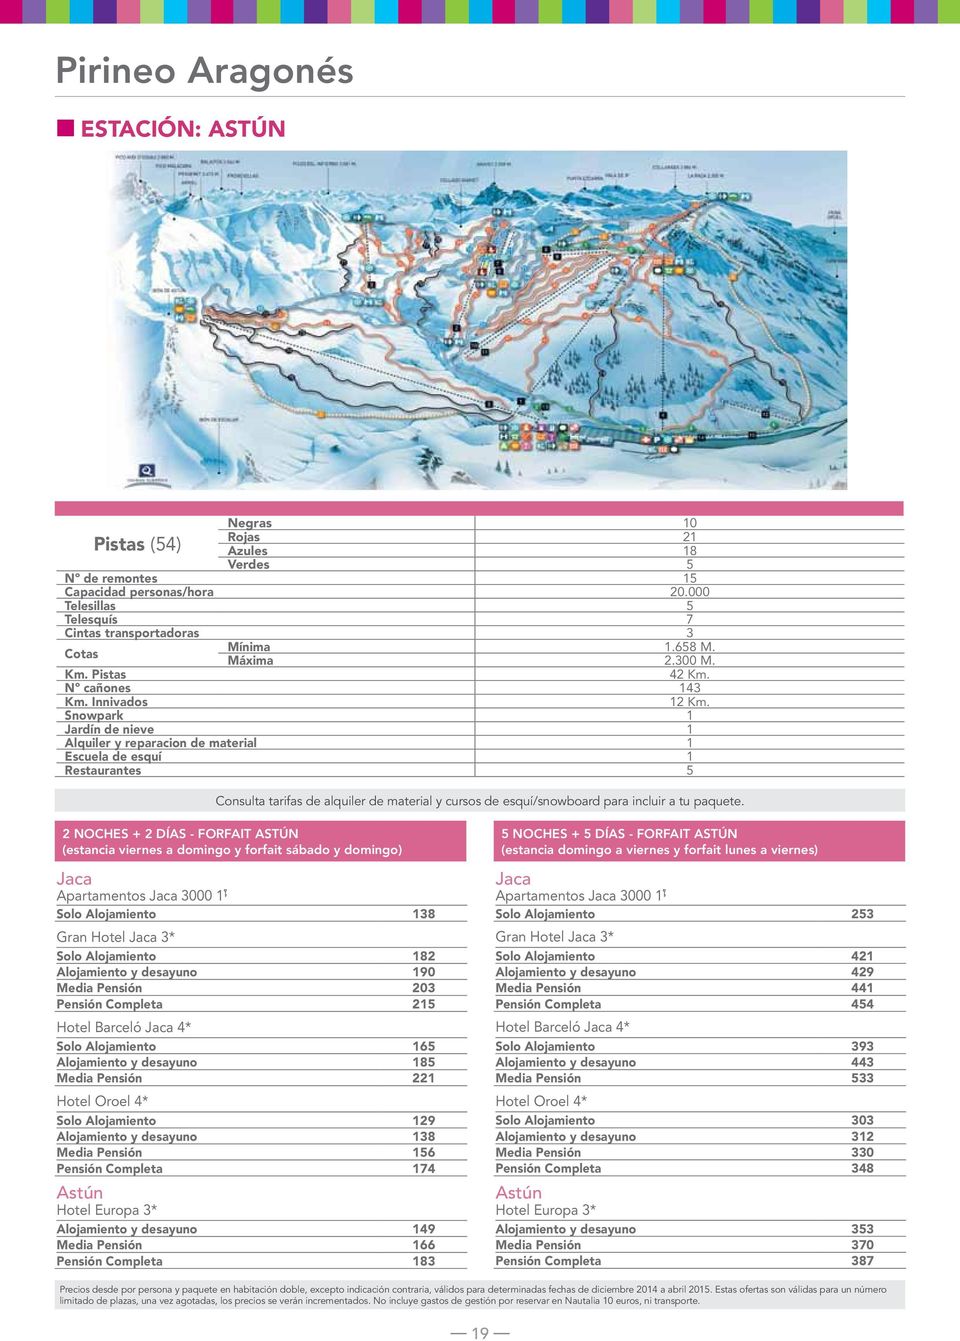 Snowpark 1 Jardín de nieve 1 Alquiler y reparacion de material 1 Escuela de esquí 1 Restaurantes 5 Consulta tarifas de alquiler de material y cursos de esquí/snowboard para incluir a tu paquete.